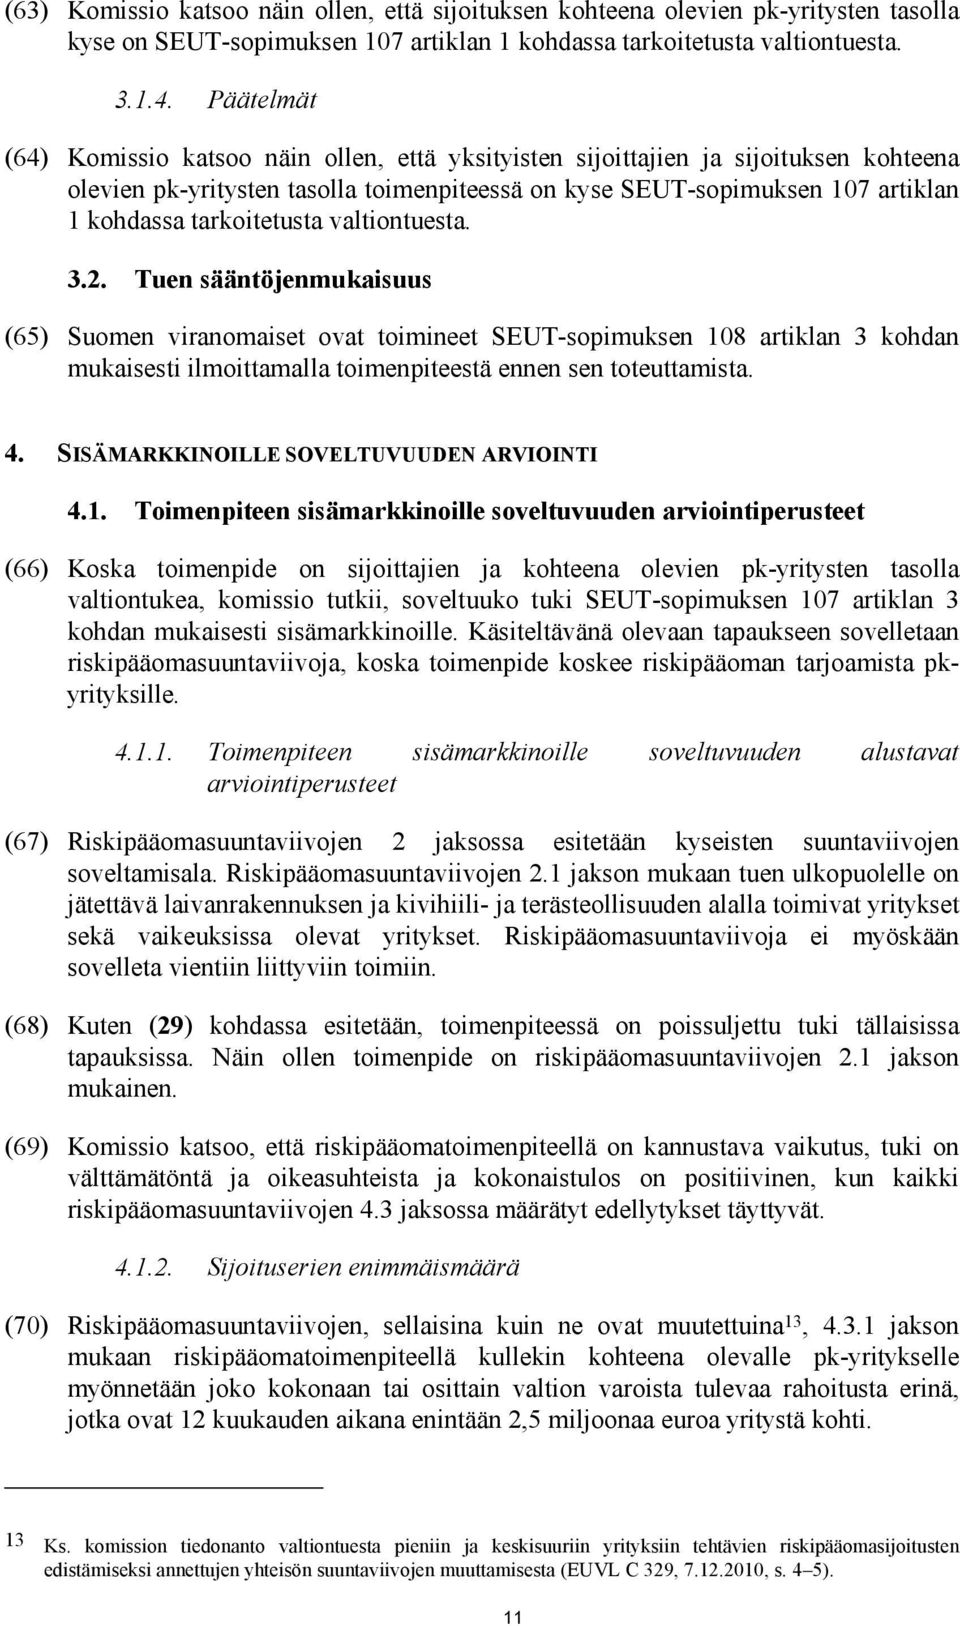 tarkoitetusta valtiontuesta. 3.2. Tuen sääntöjenmukaisuus (65) Suomen viranomaiset ovat toimineet SEUT-sopimuksen 108 artiklan 3 kohdan mukaisesti ilmoittamalla toimenpiteestä ennen sen toteuttamista.